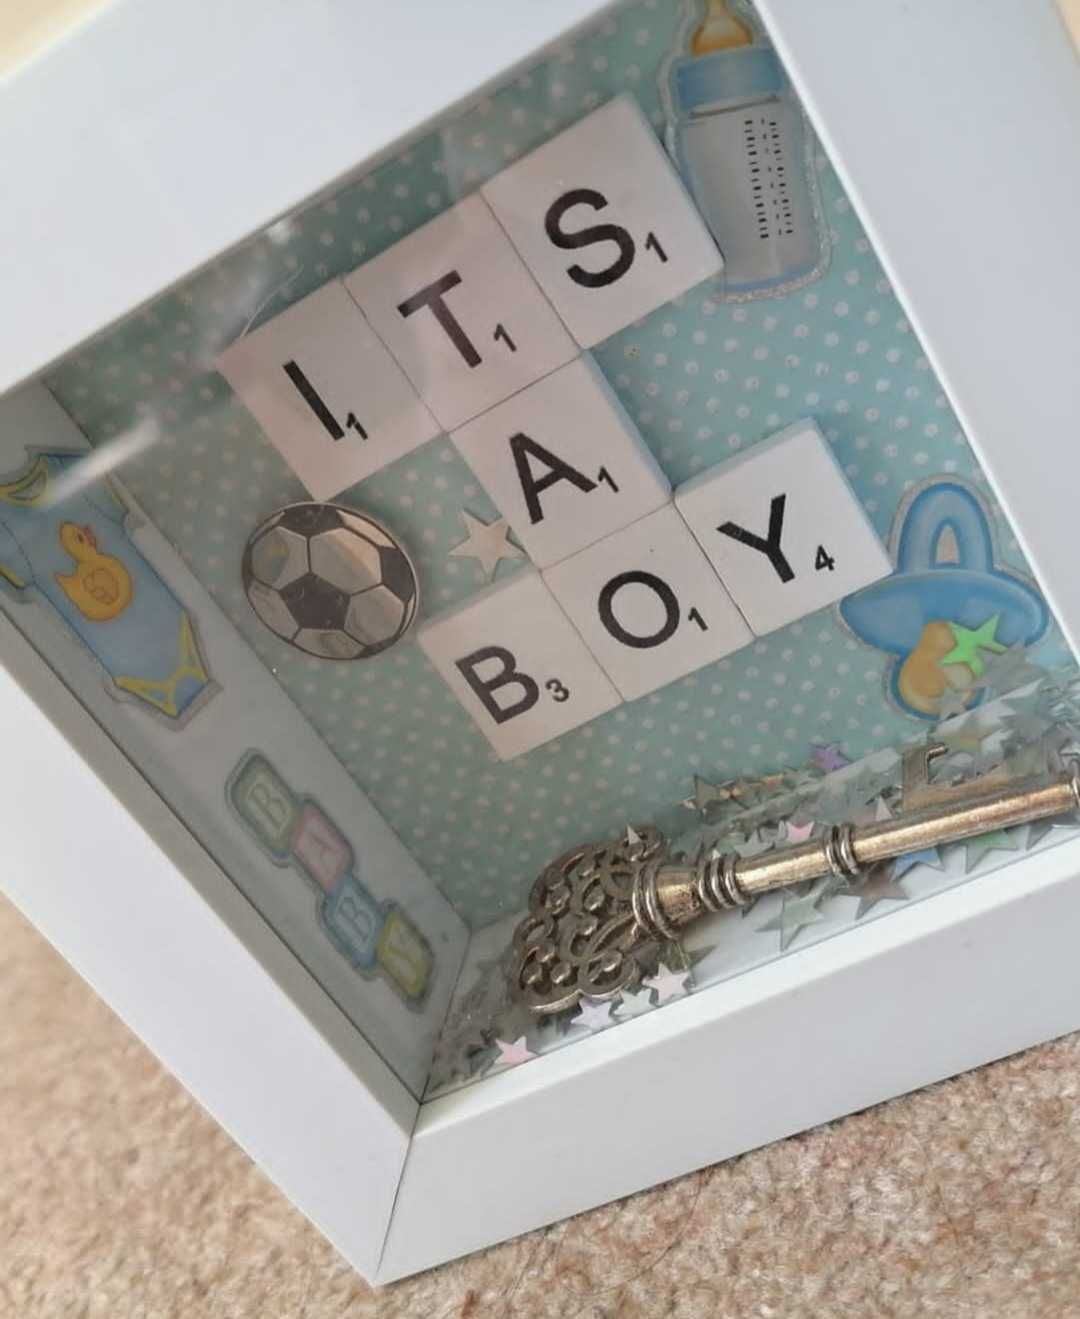 3д рамка,декорация подарък за момче "It's a boy